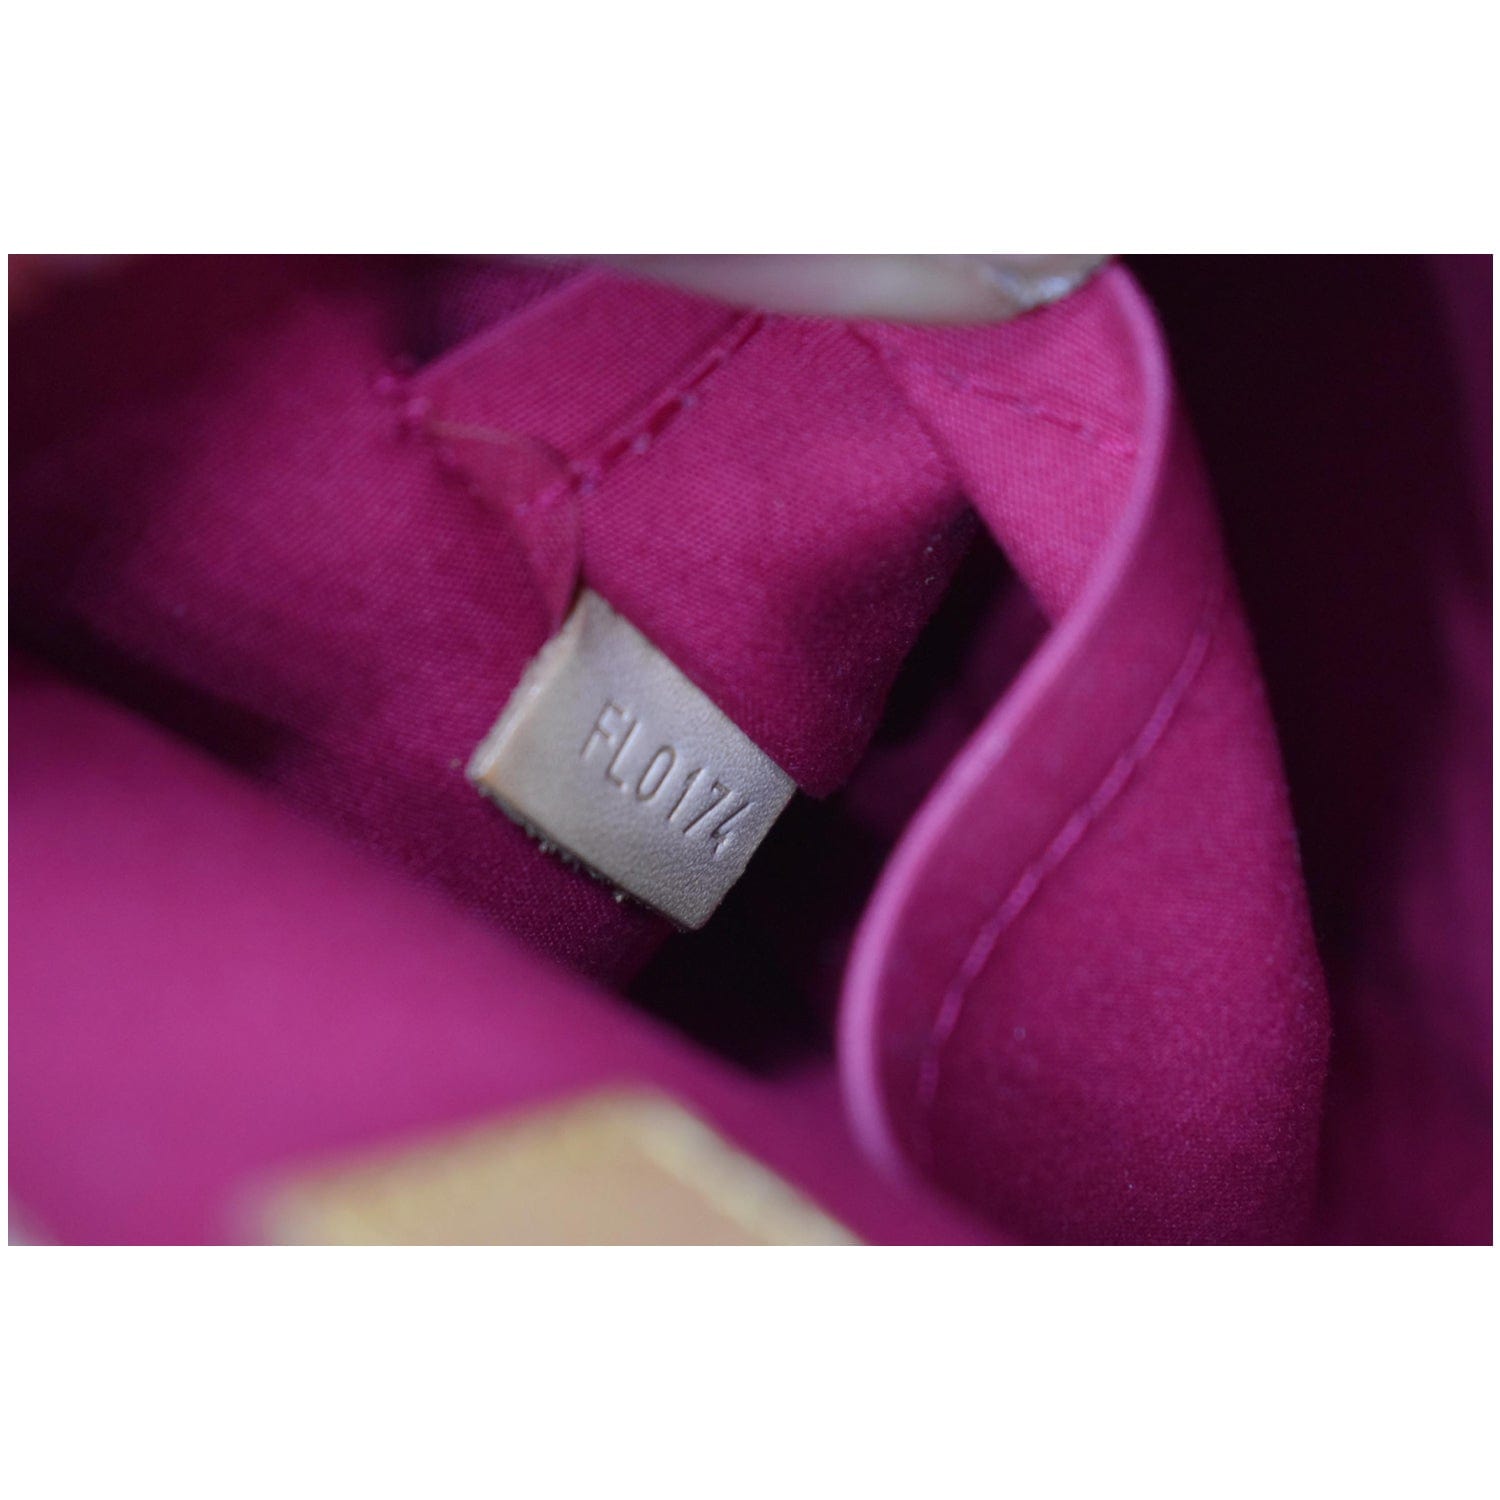 Purple Louis Vuitton Vernis Alma PM Handbag